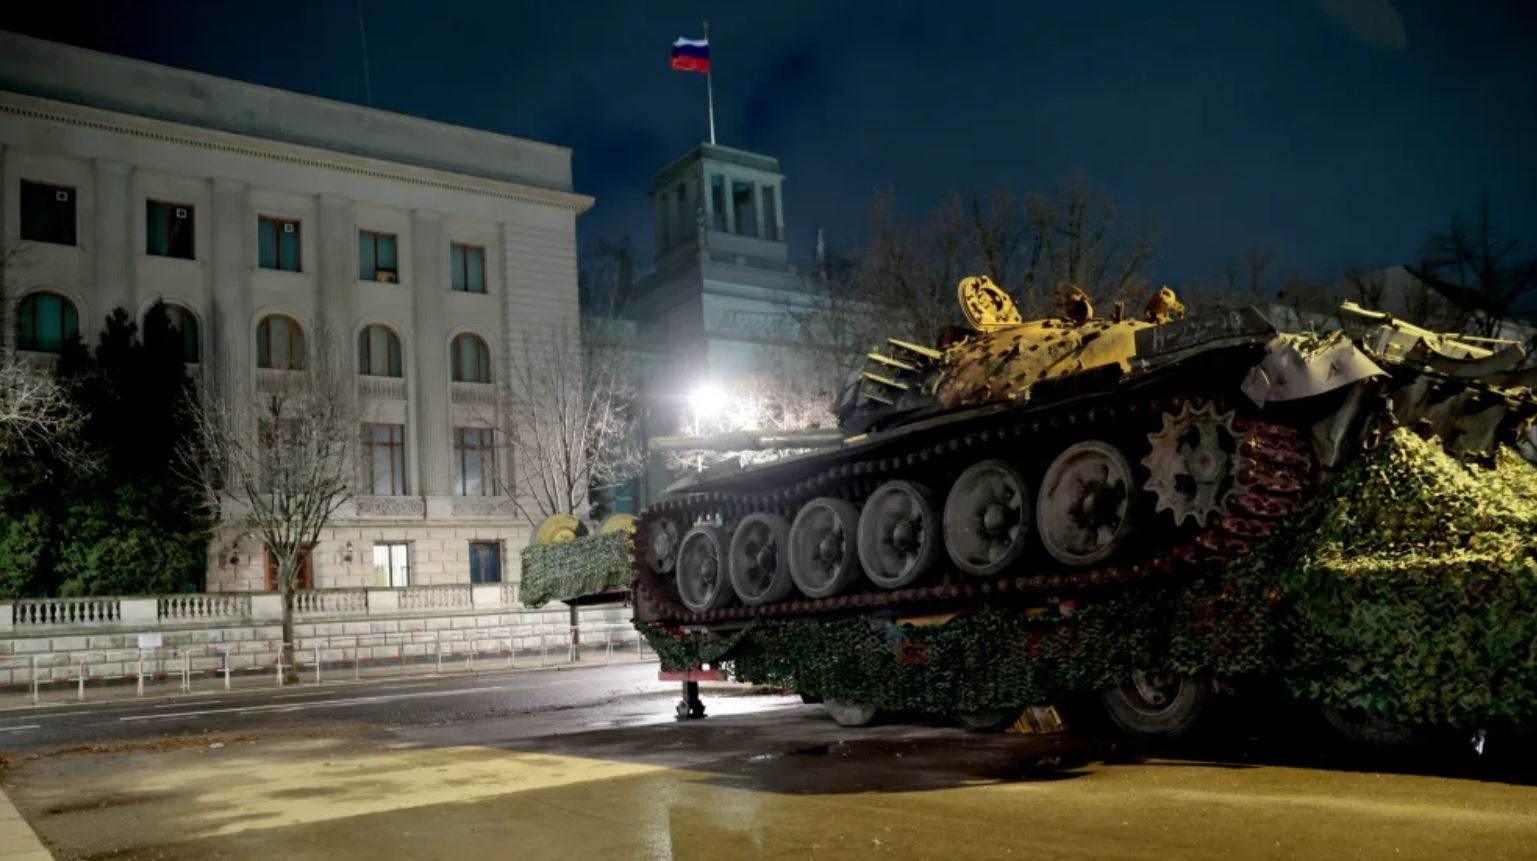 Подбитый российский танк, установленный в Берлине у посольства РФ, украсили цветами (фото, видео) - 3 - изображение